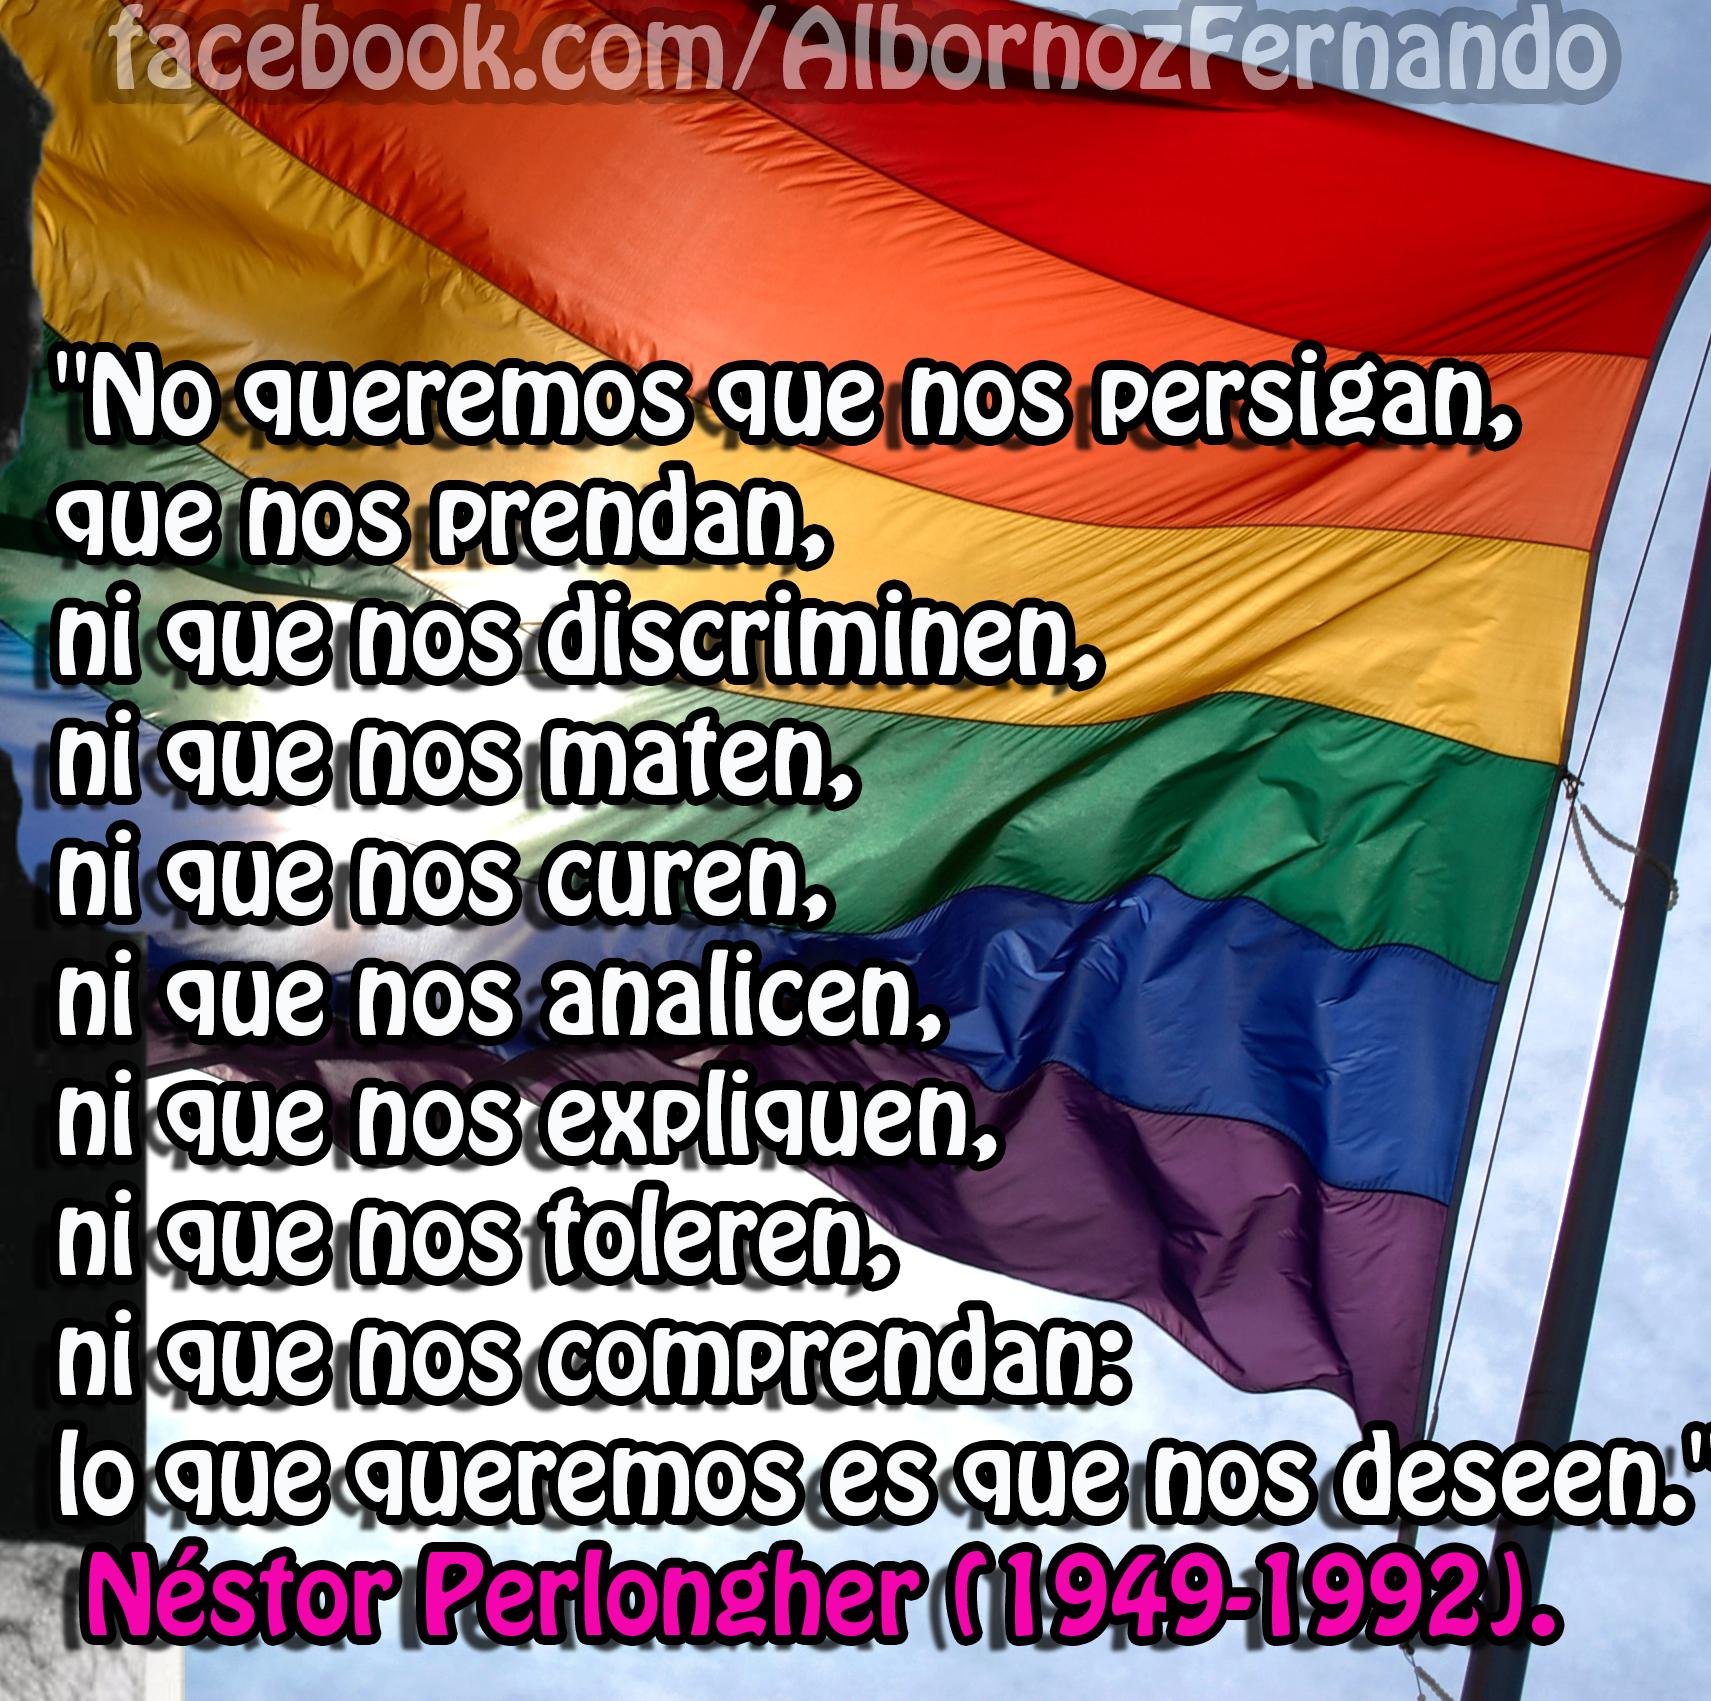 Colectivo de gays, lesbianas, travestis, transexuales, transgénero, bisexuales, intersex y queer de Argentina